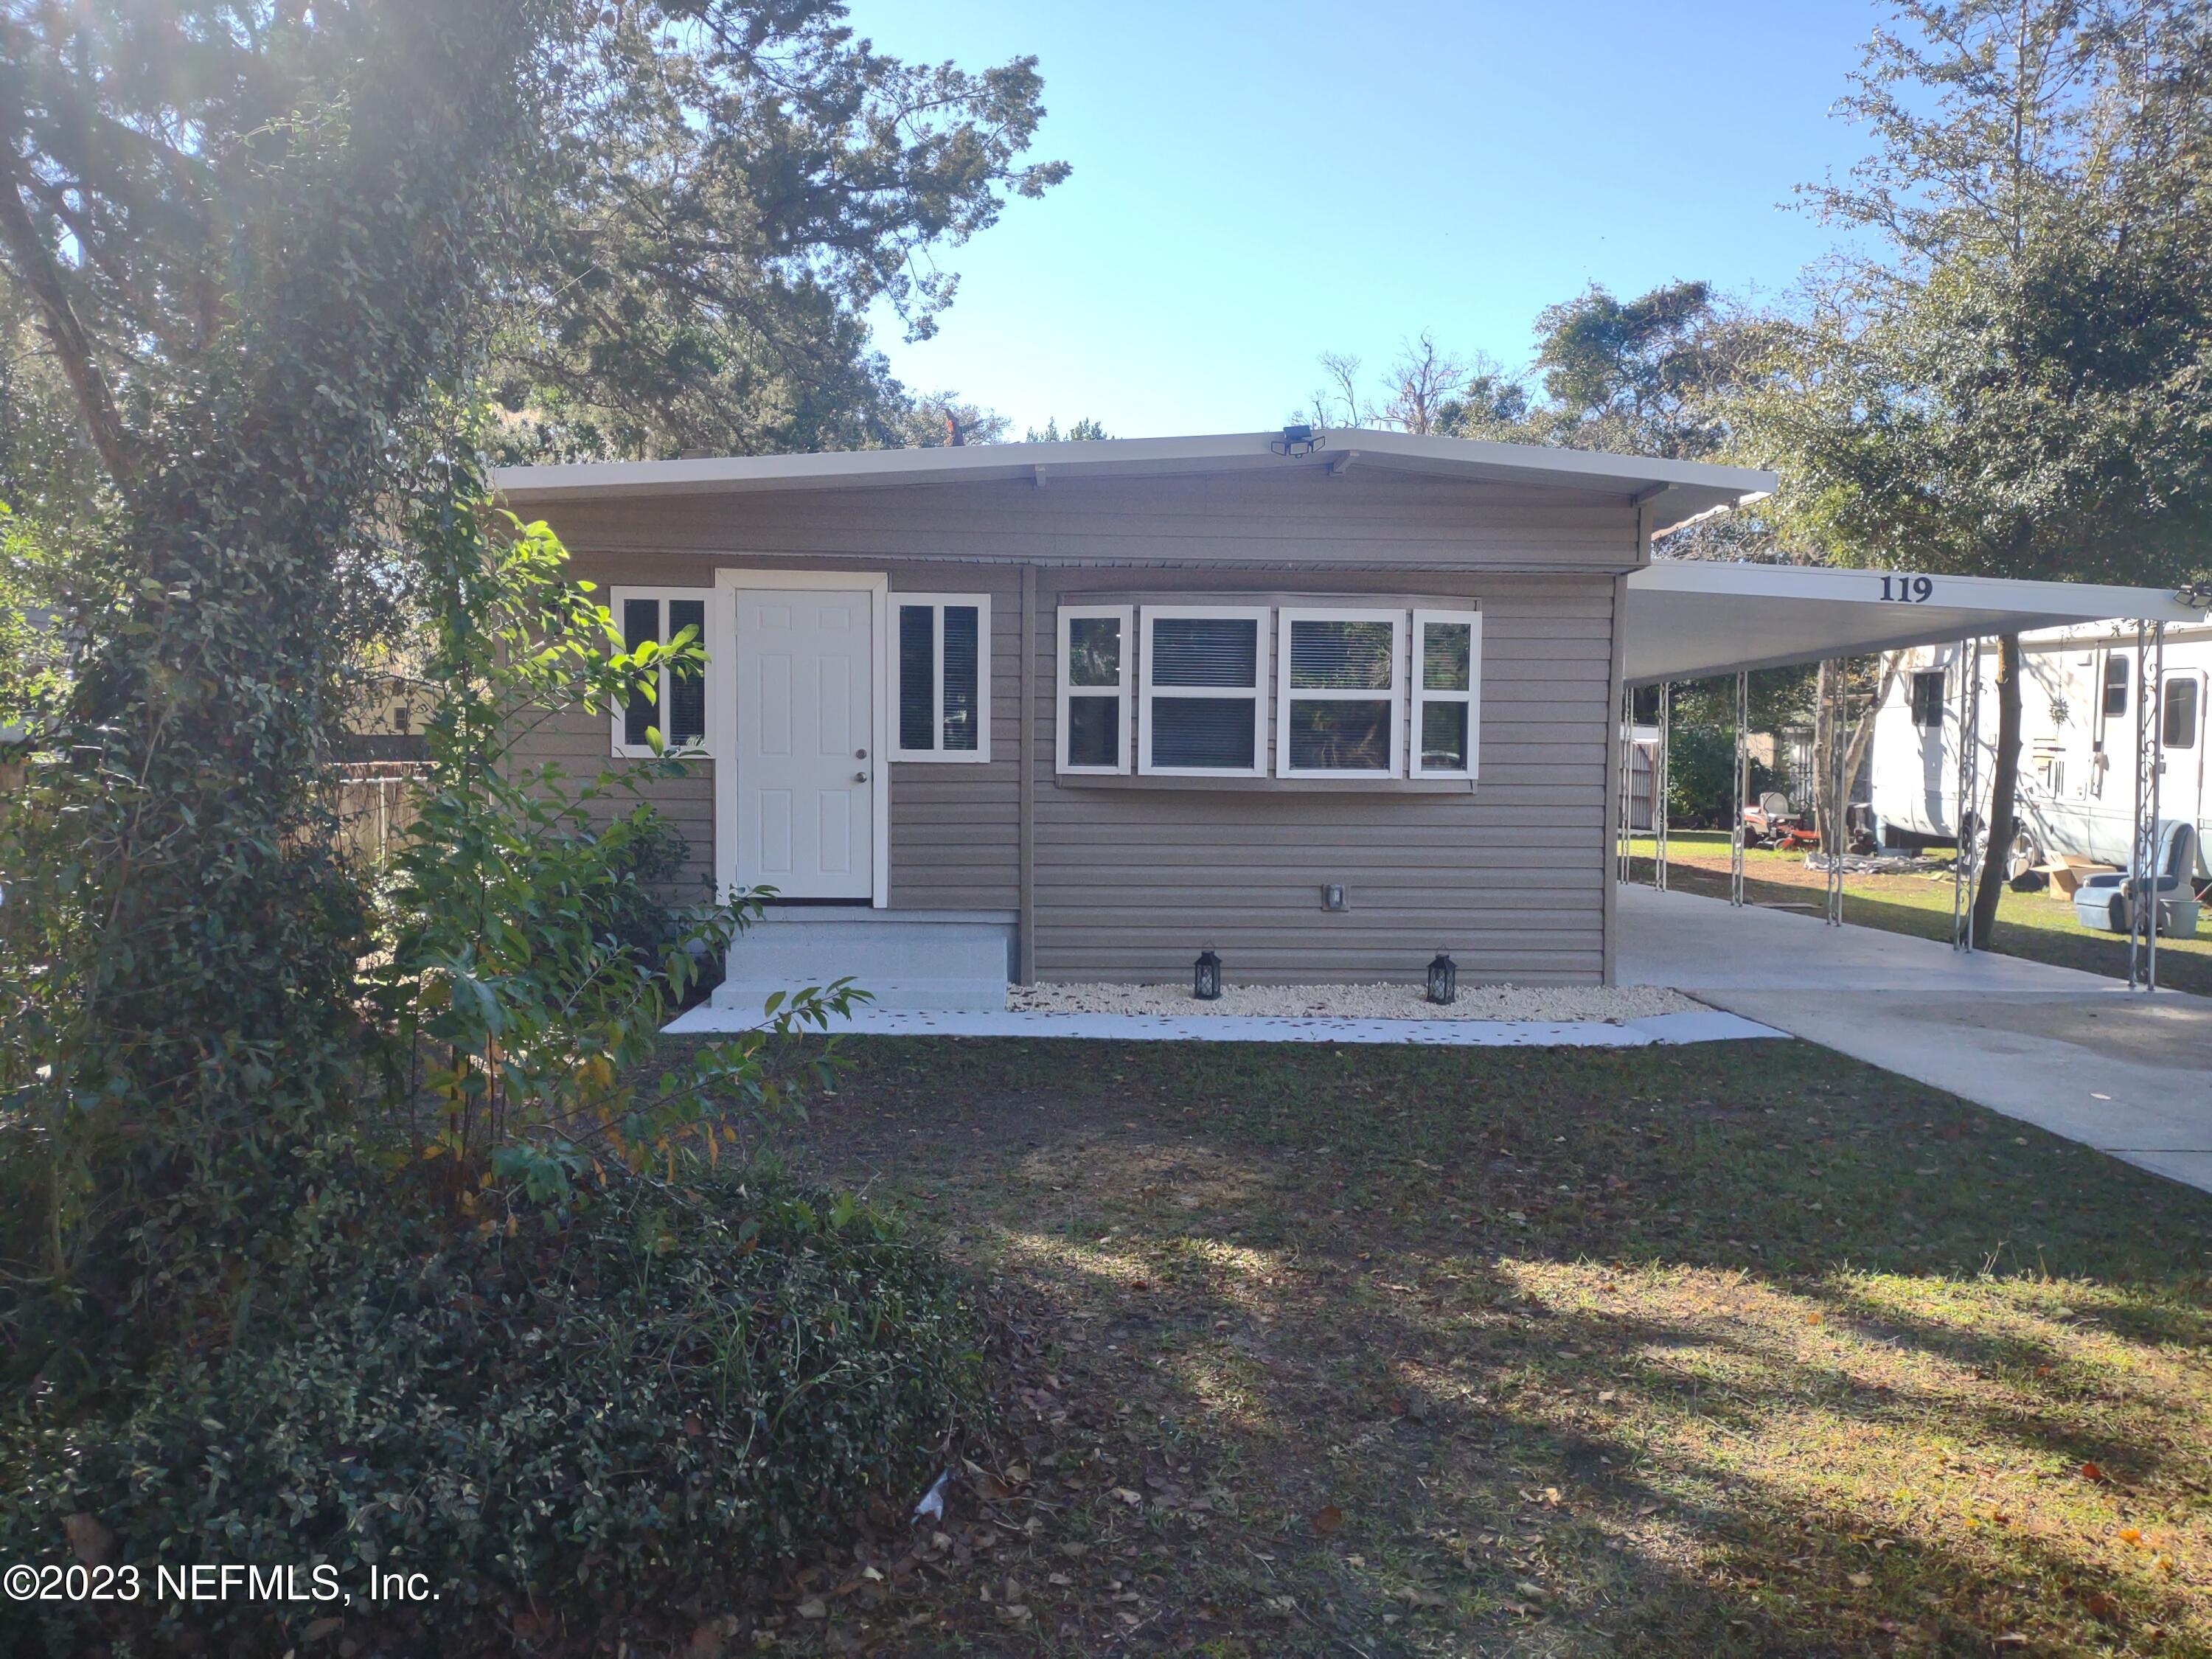 Interlachen, FL home for sale located at 119 Salem Street, Interlachen, FL 32148